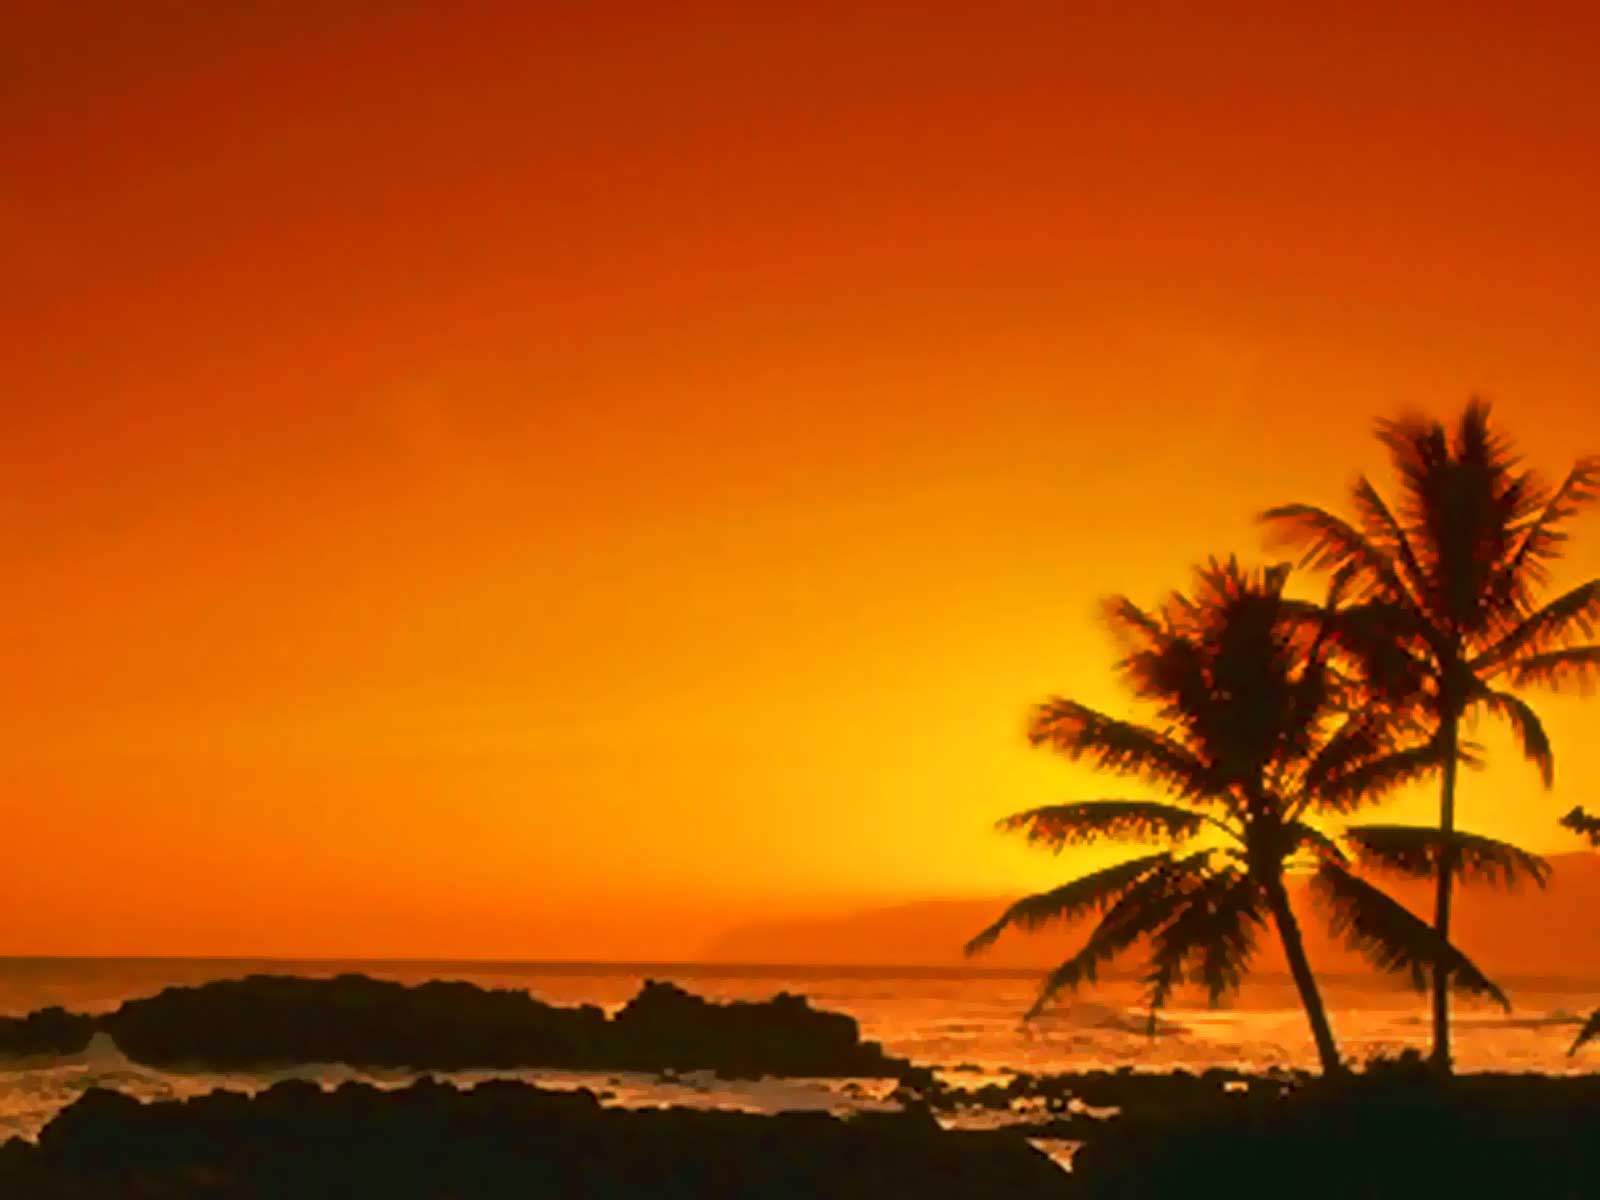 sunset beach 4 wallpaper 2048 x 1152 Image HD Wallpaper Desktop